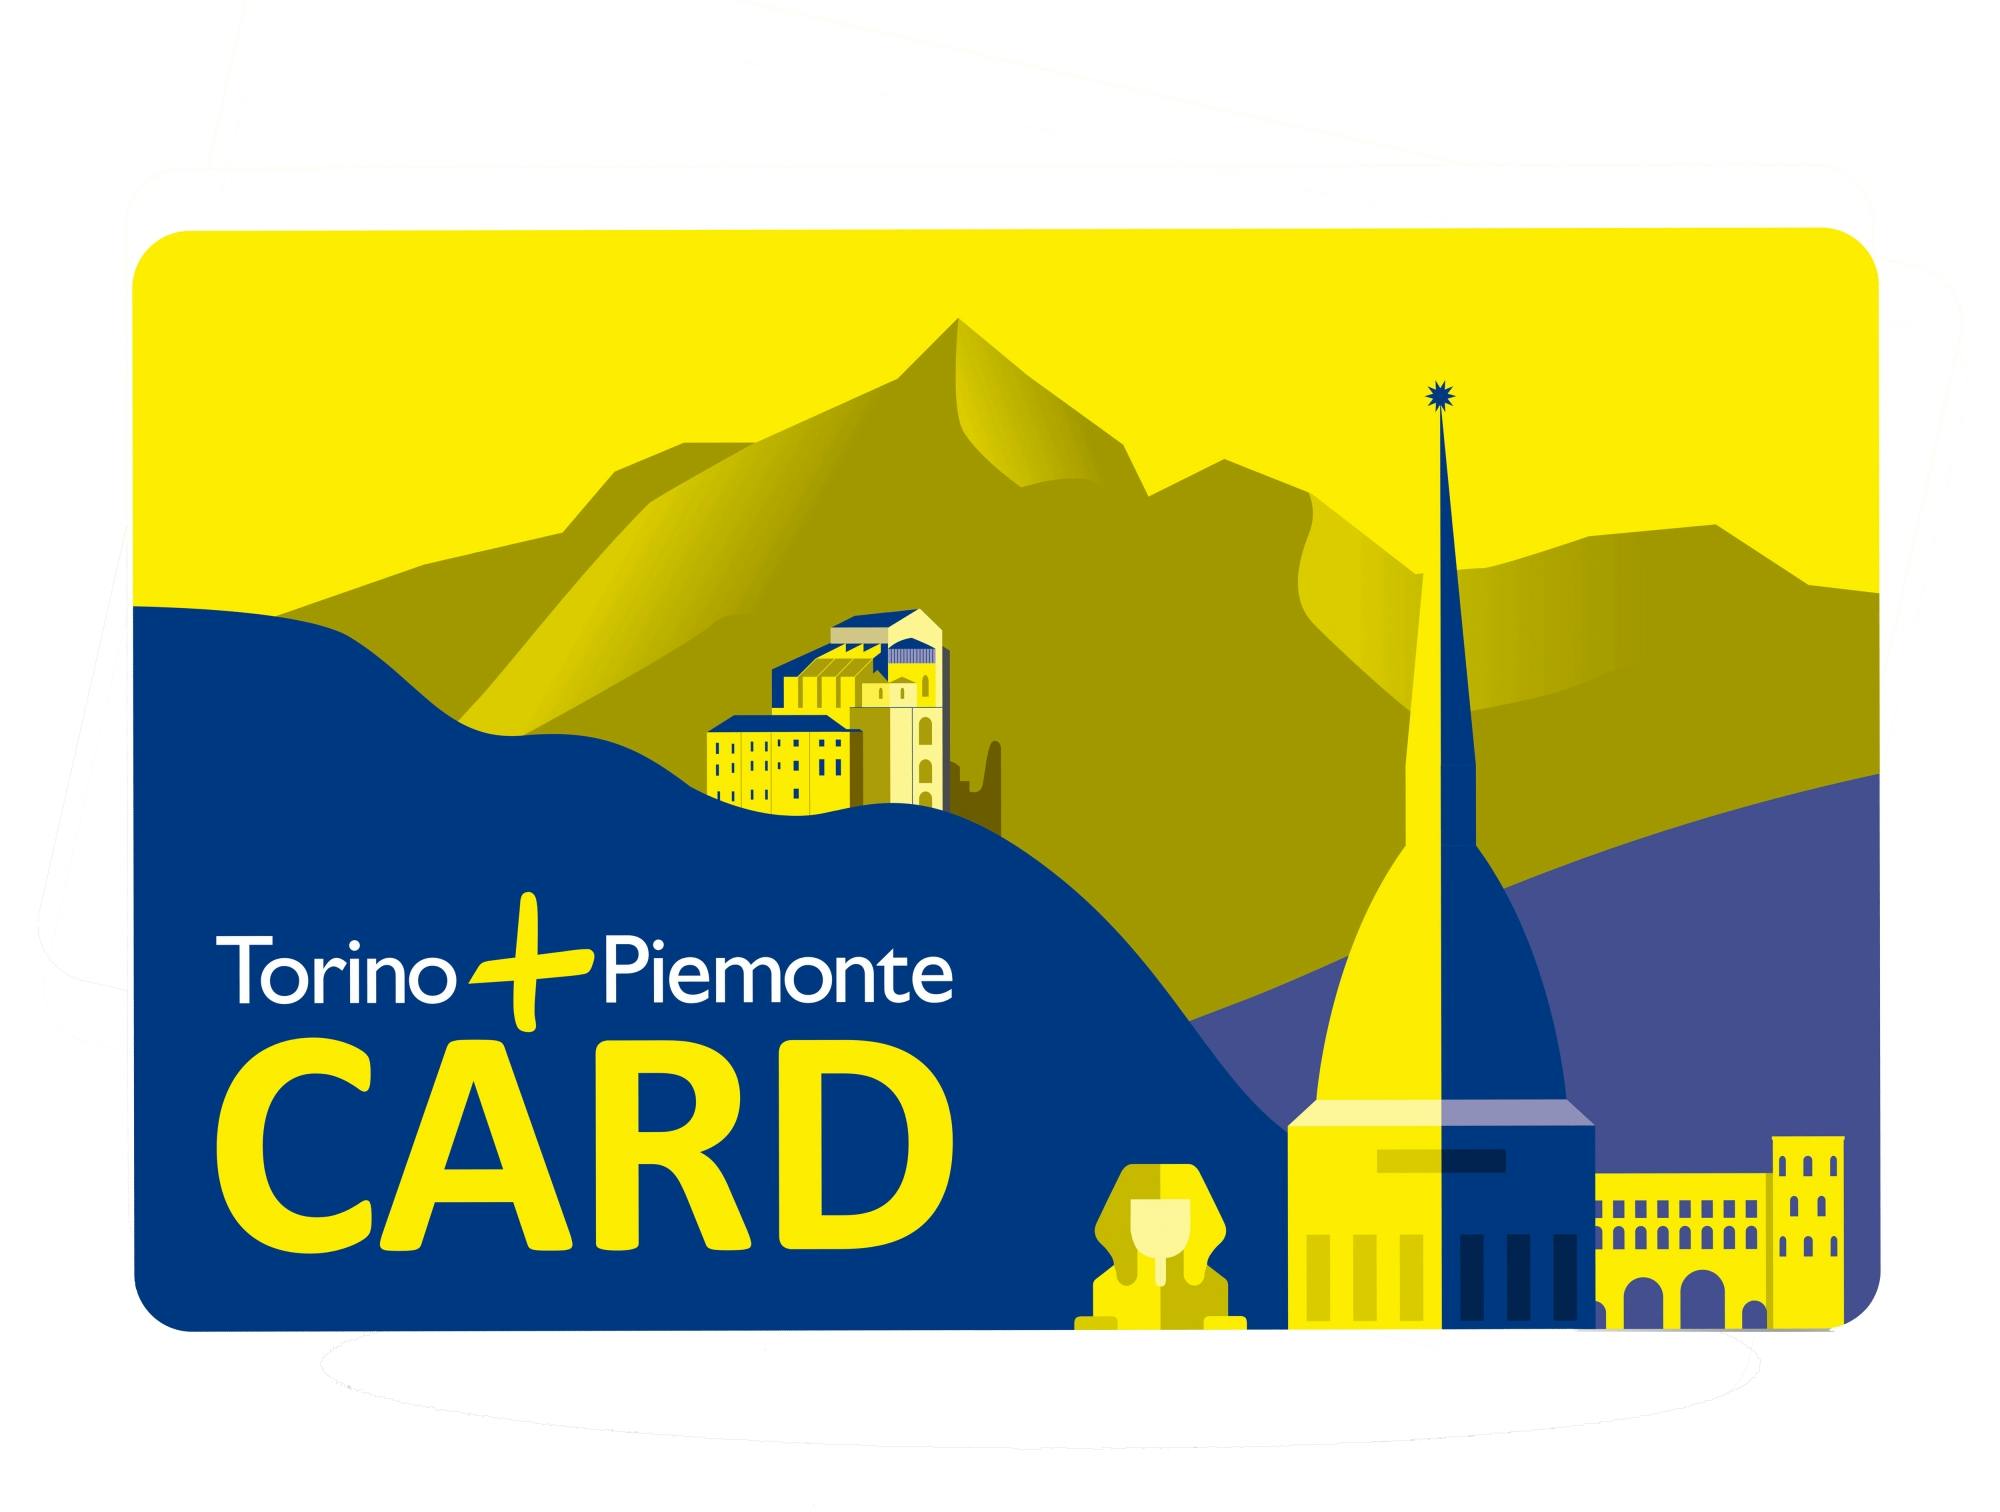 Torino + Piemonte kort